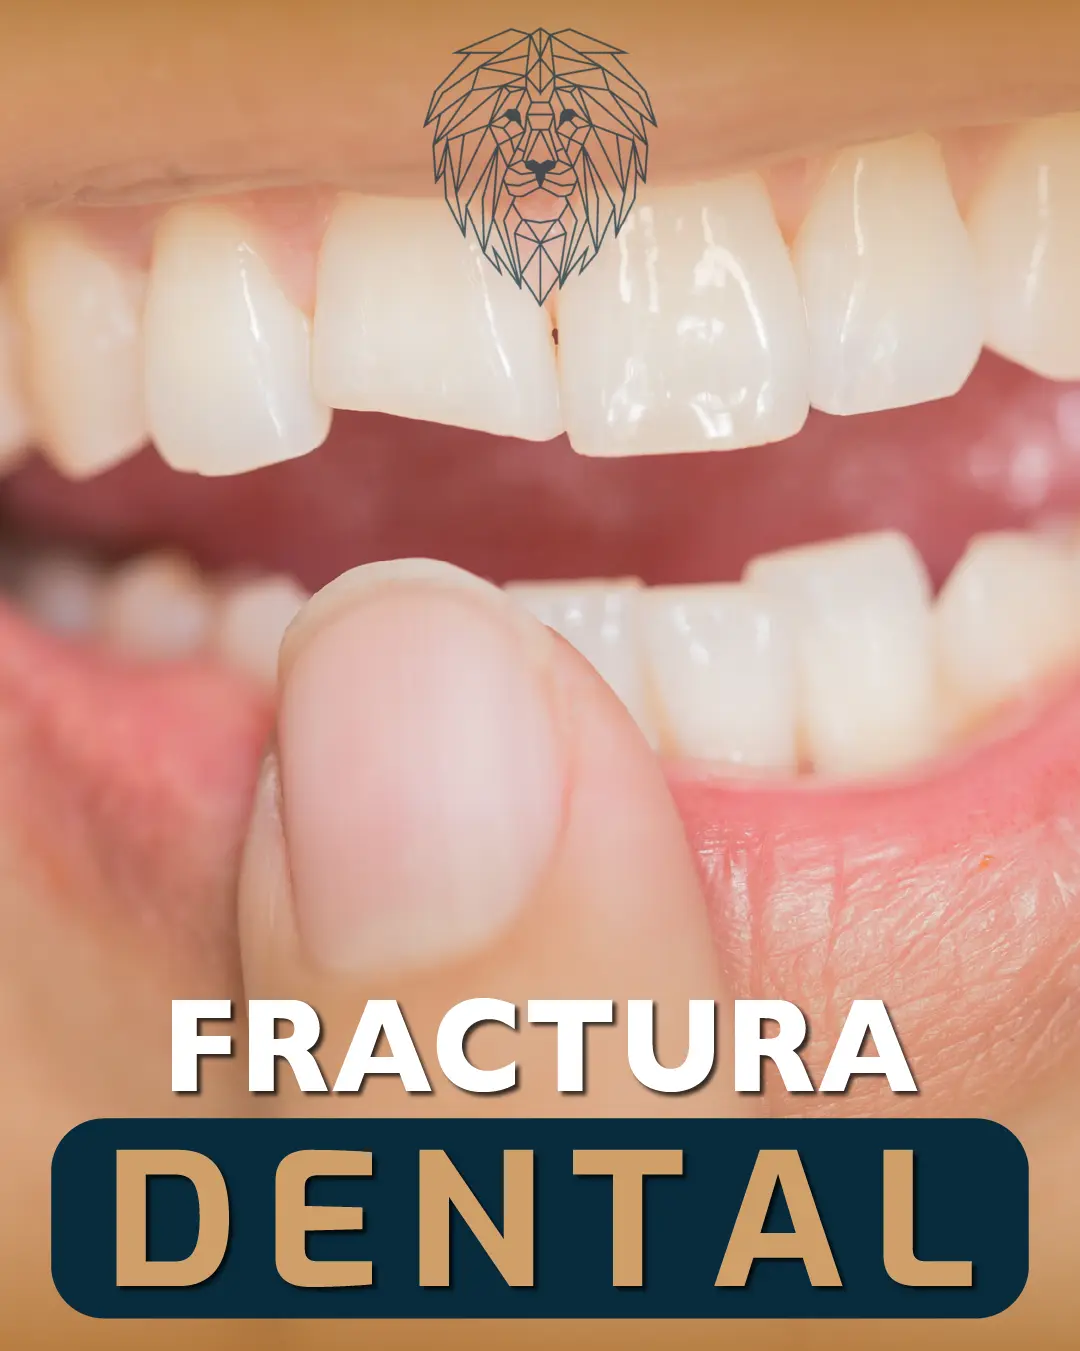 Fractura Dental: Pasos Esenciales para un Tratamiento Inmediato